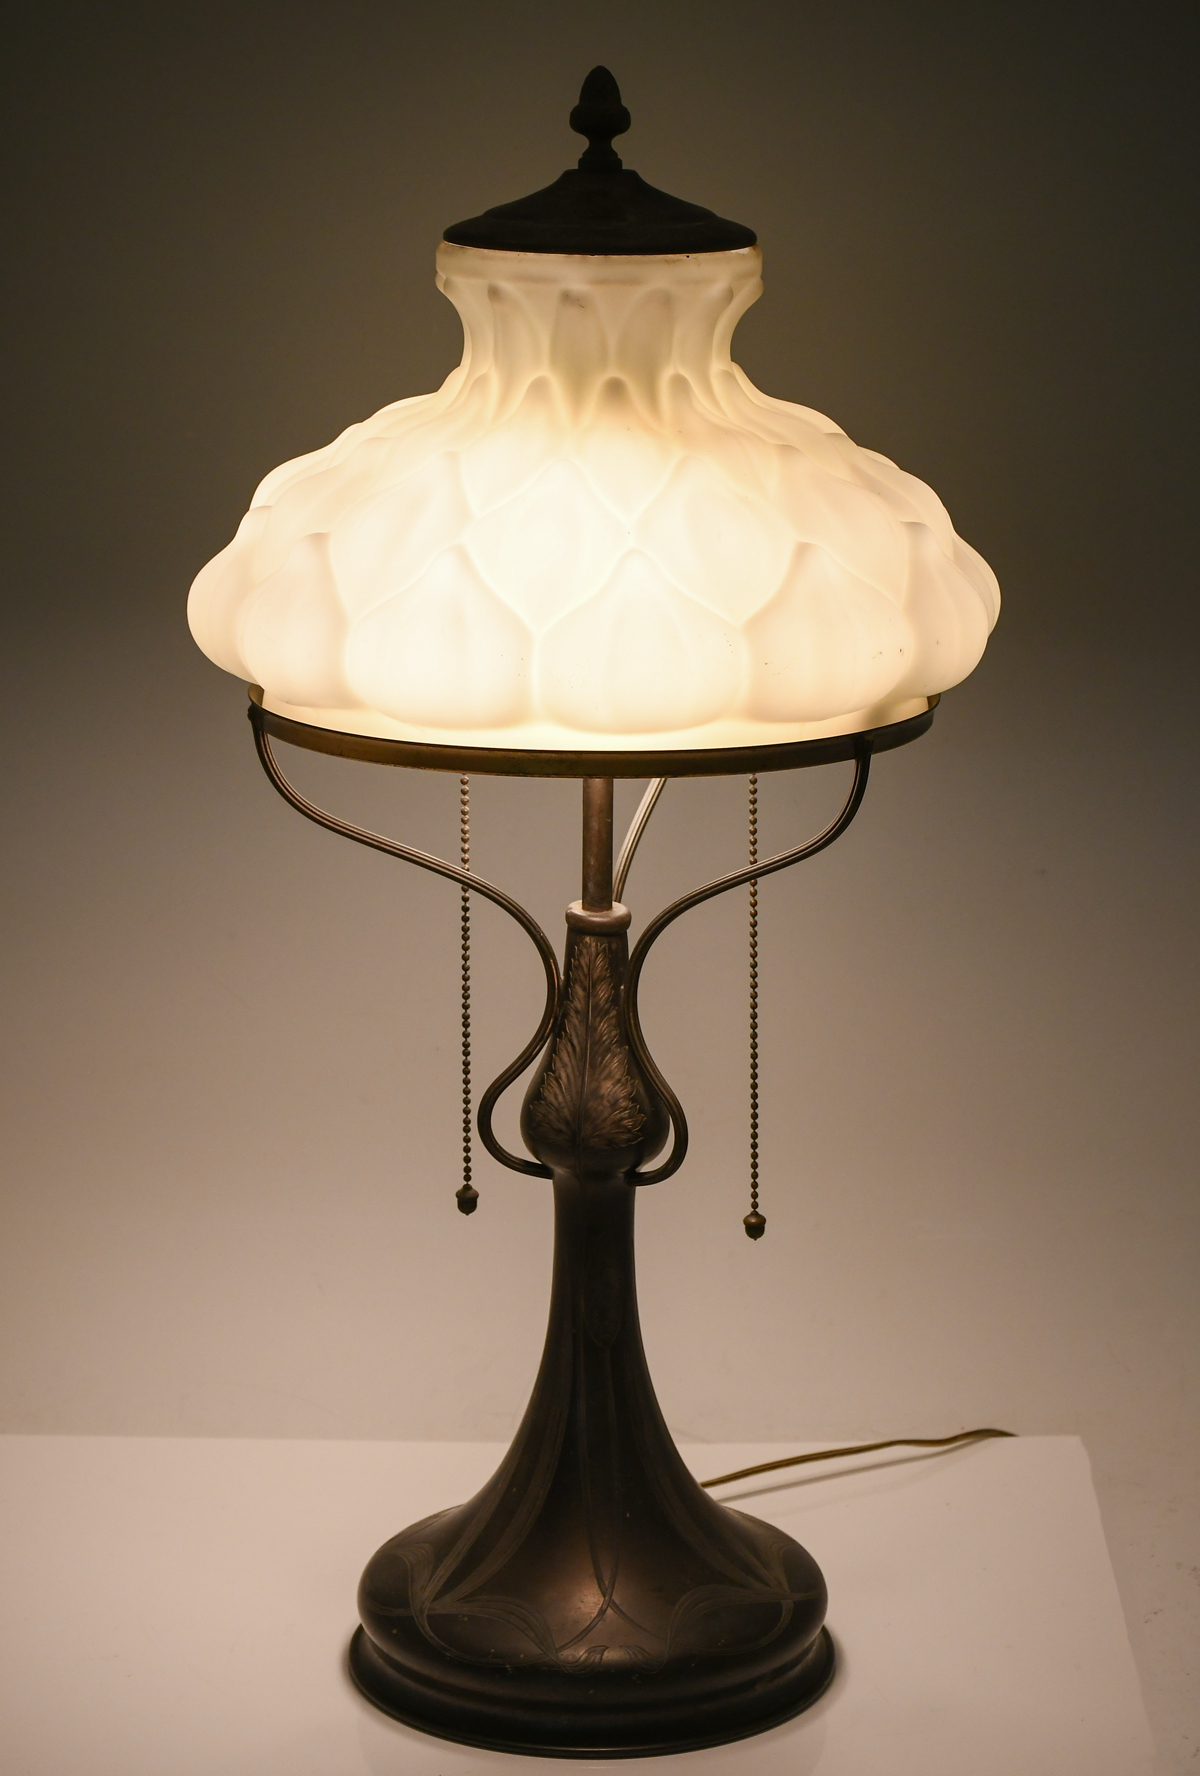 ART NOUVEAU PAIRPOINT TABLE LAMP  36a1fc